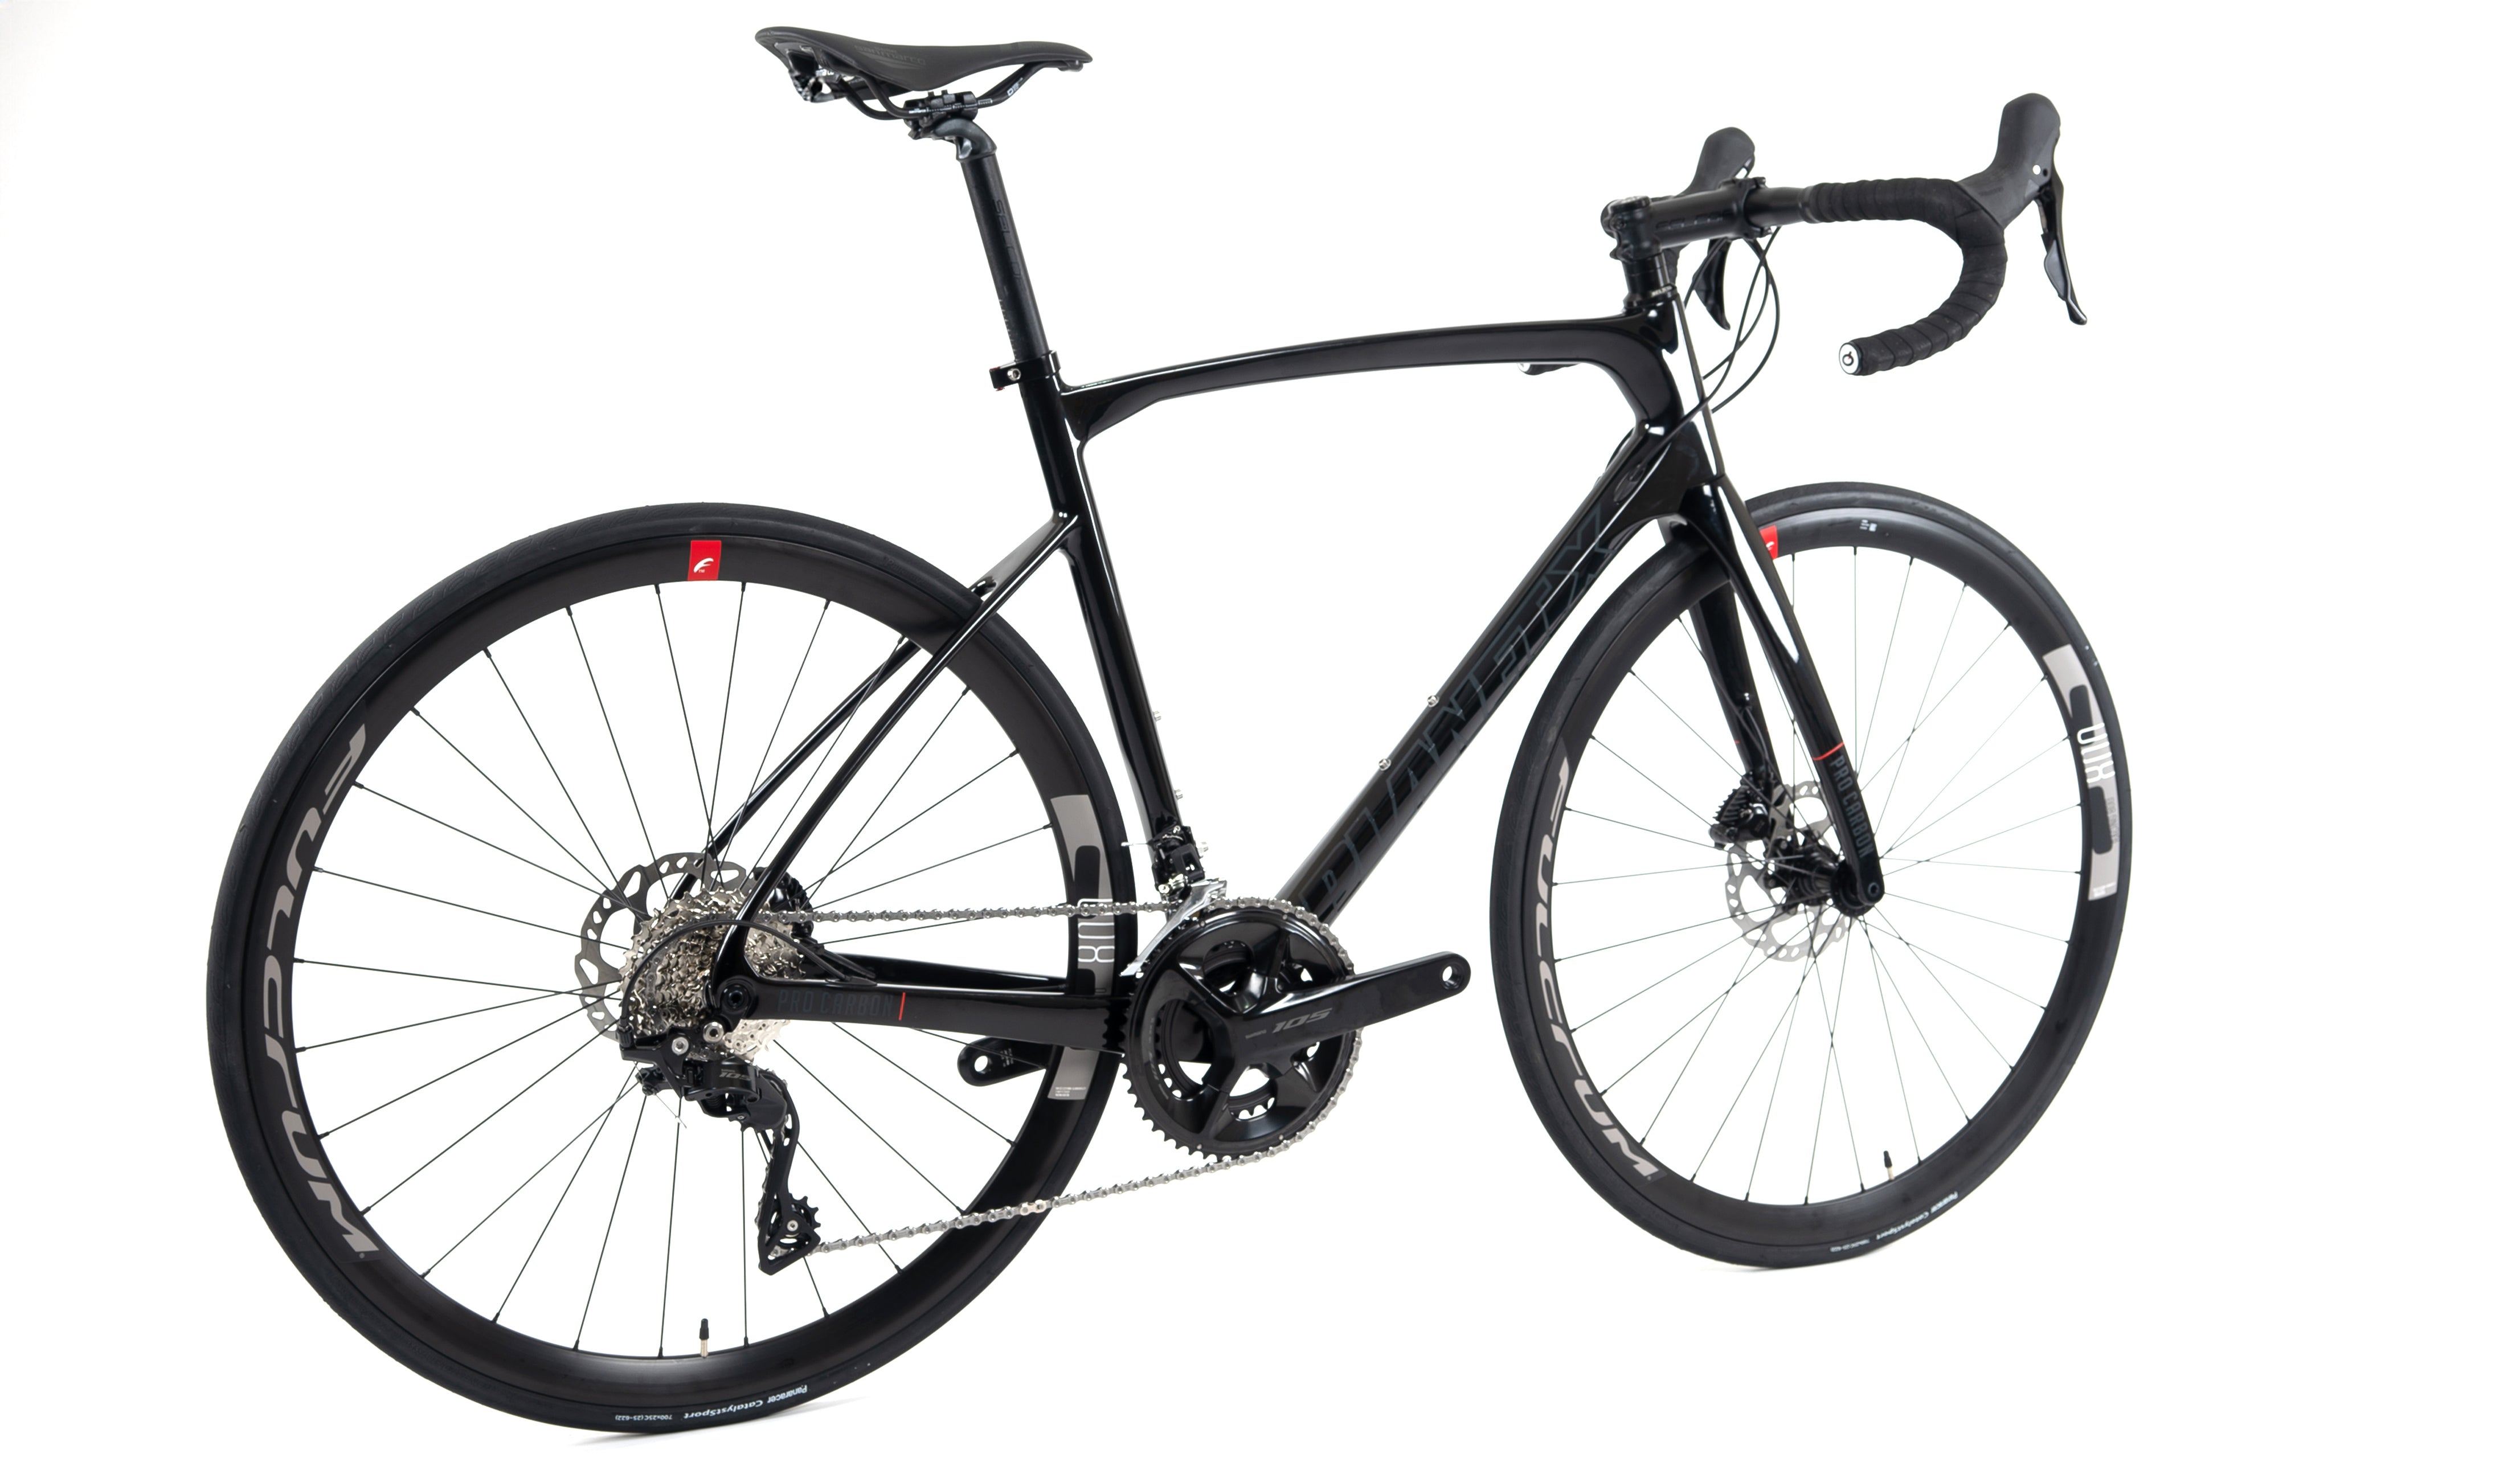 Planet X Pro Carbon Shimano 105 R7100 Road Bike